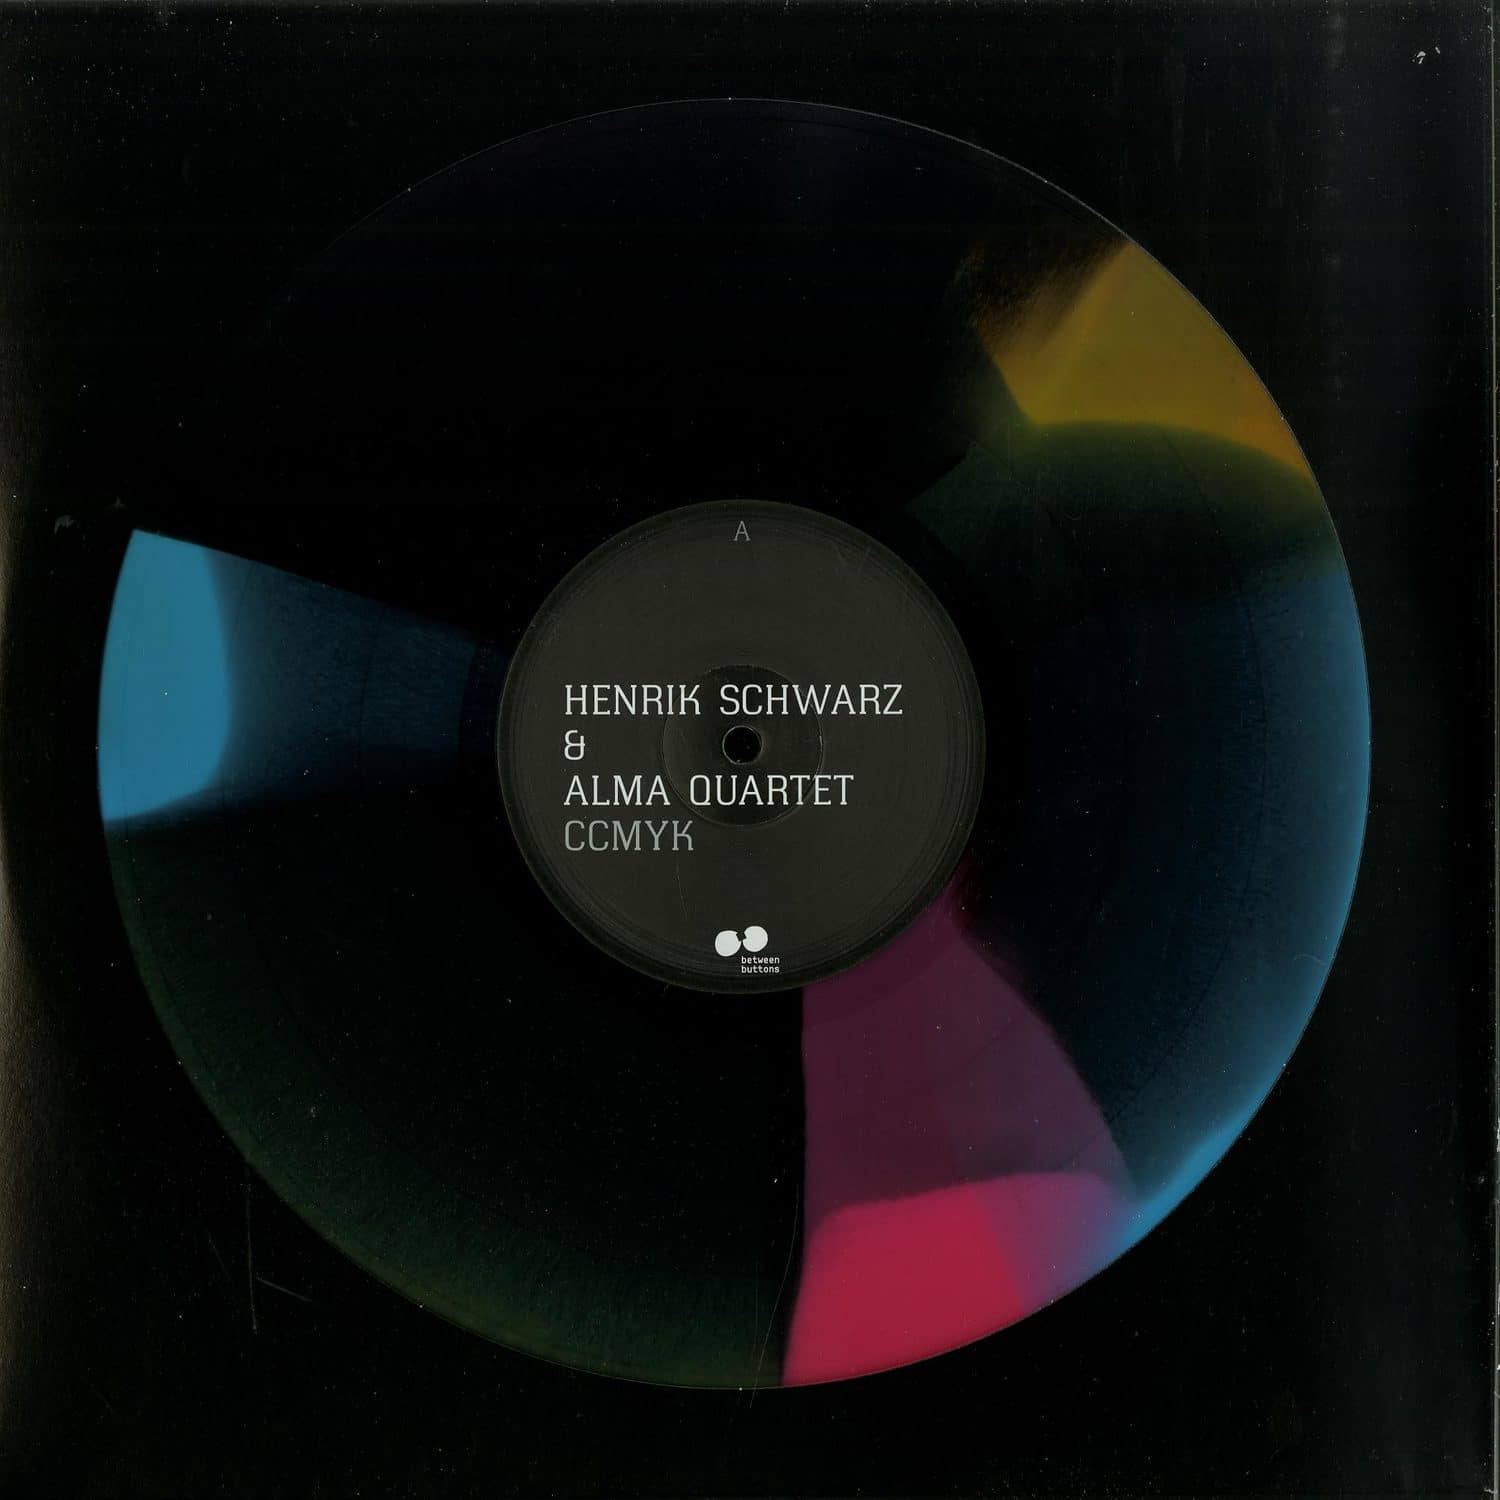 Henrik Schwarz & Alma Quartet - CCMYK 